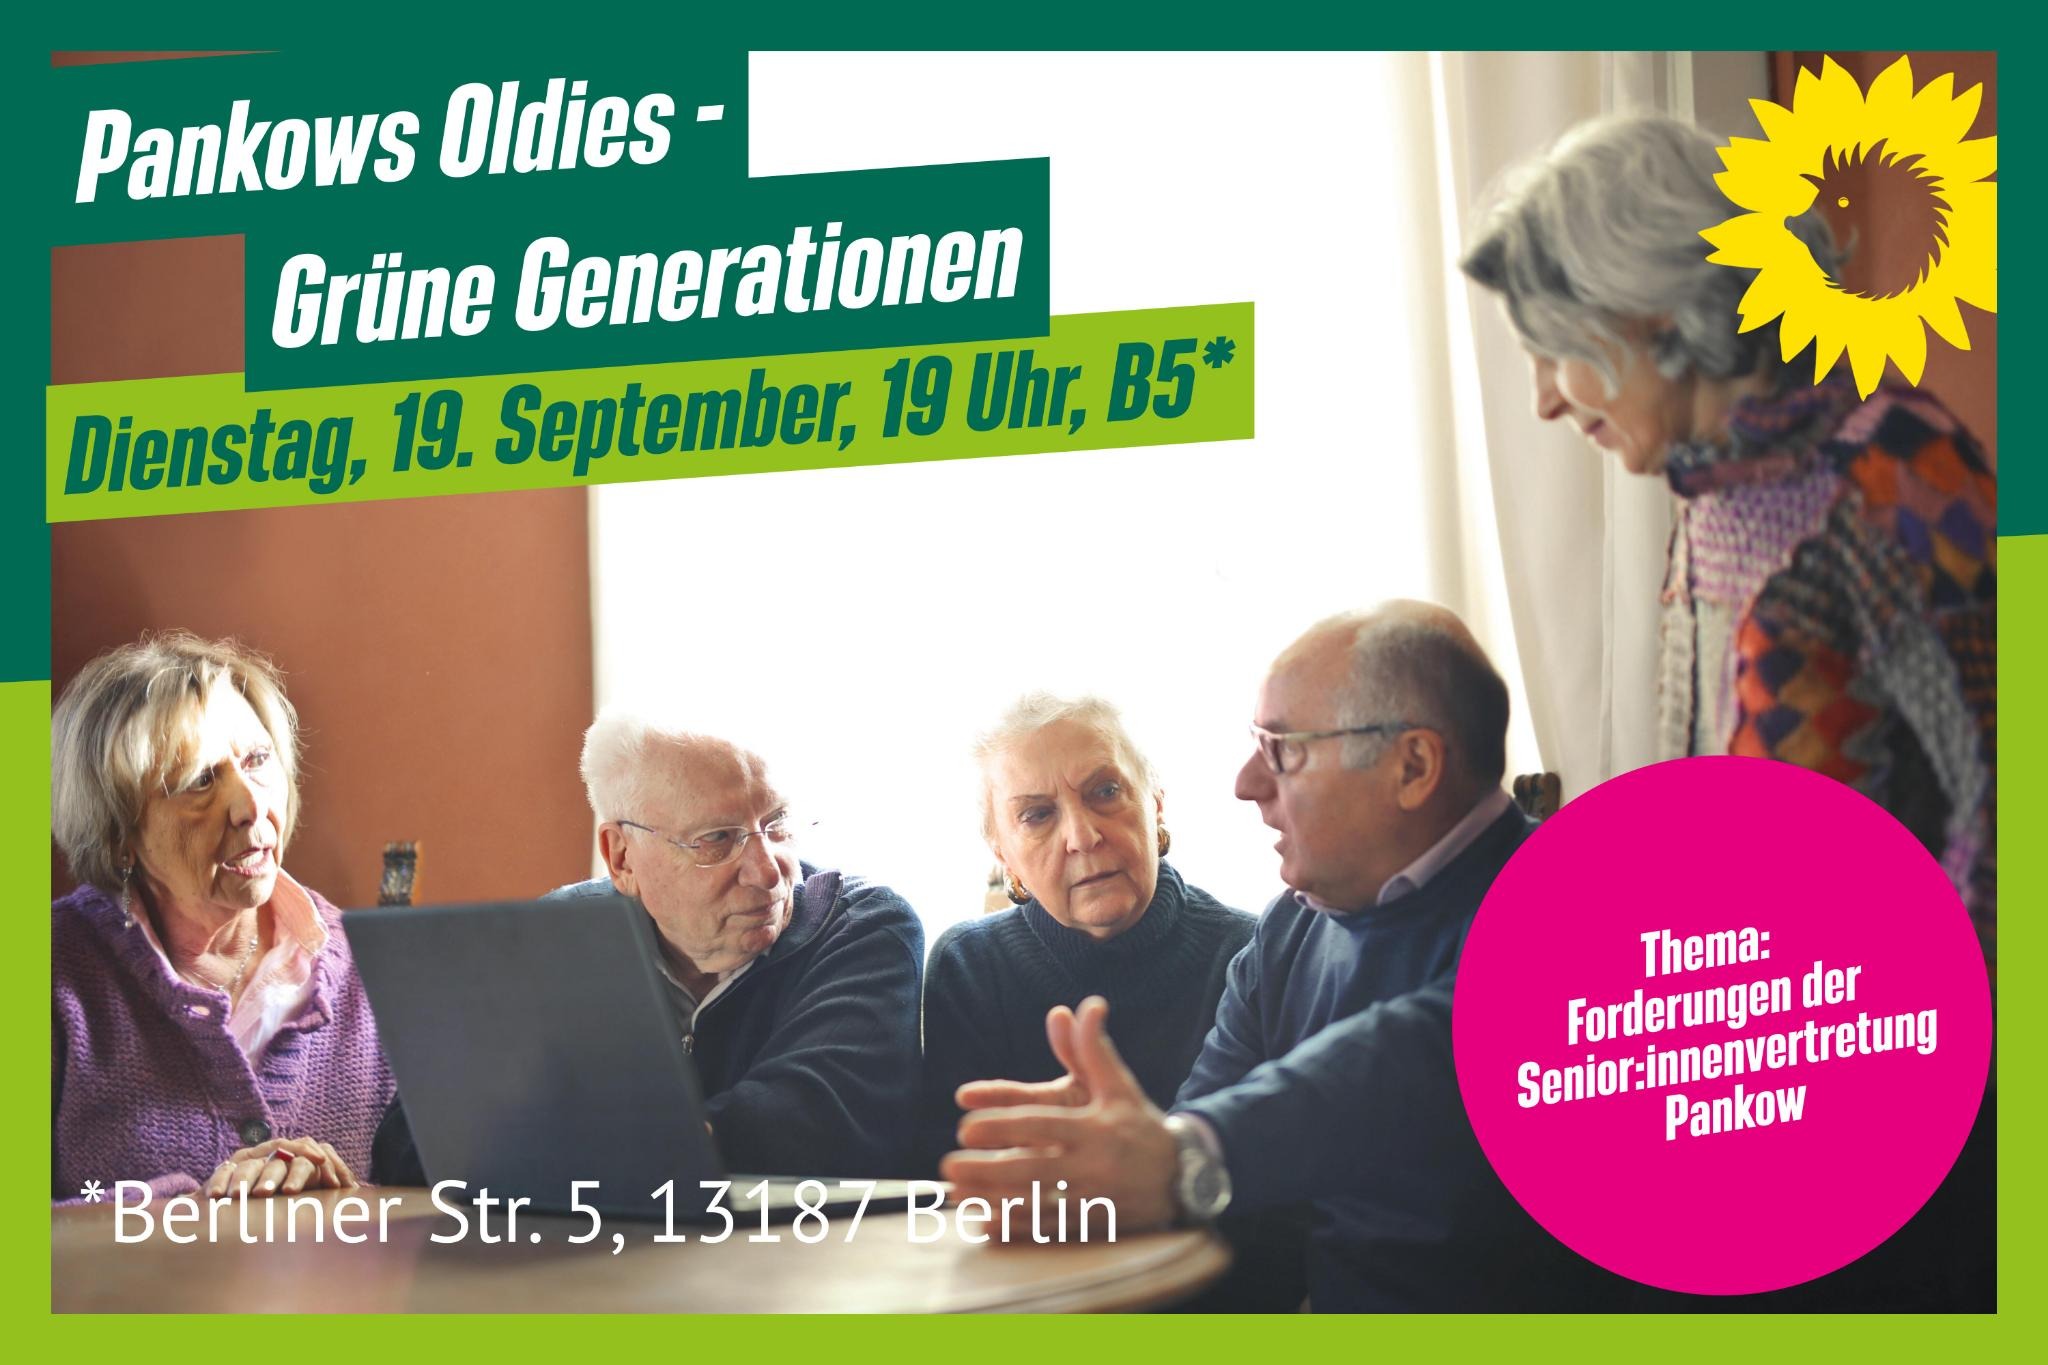 Ein Sharepic: Eine Gruppe von älteren Menschen im Gespräch. Dazu die Informationen zur Veranstaltung.